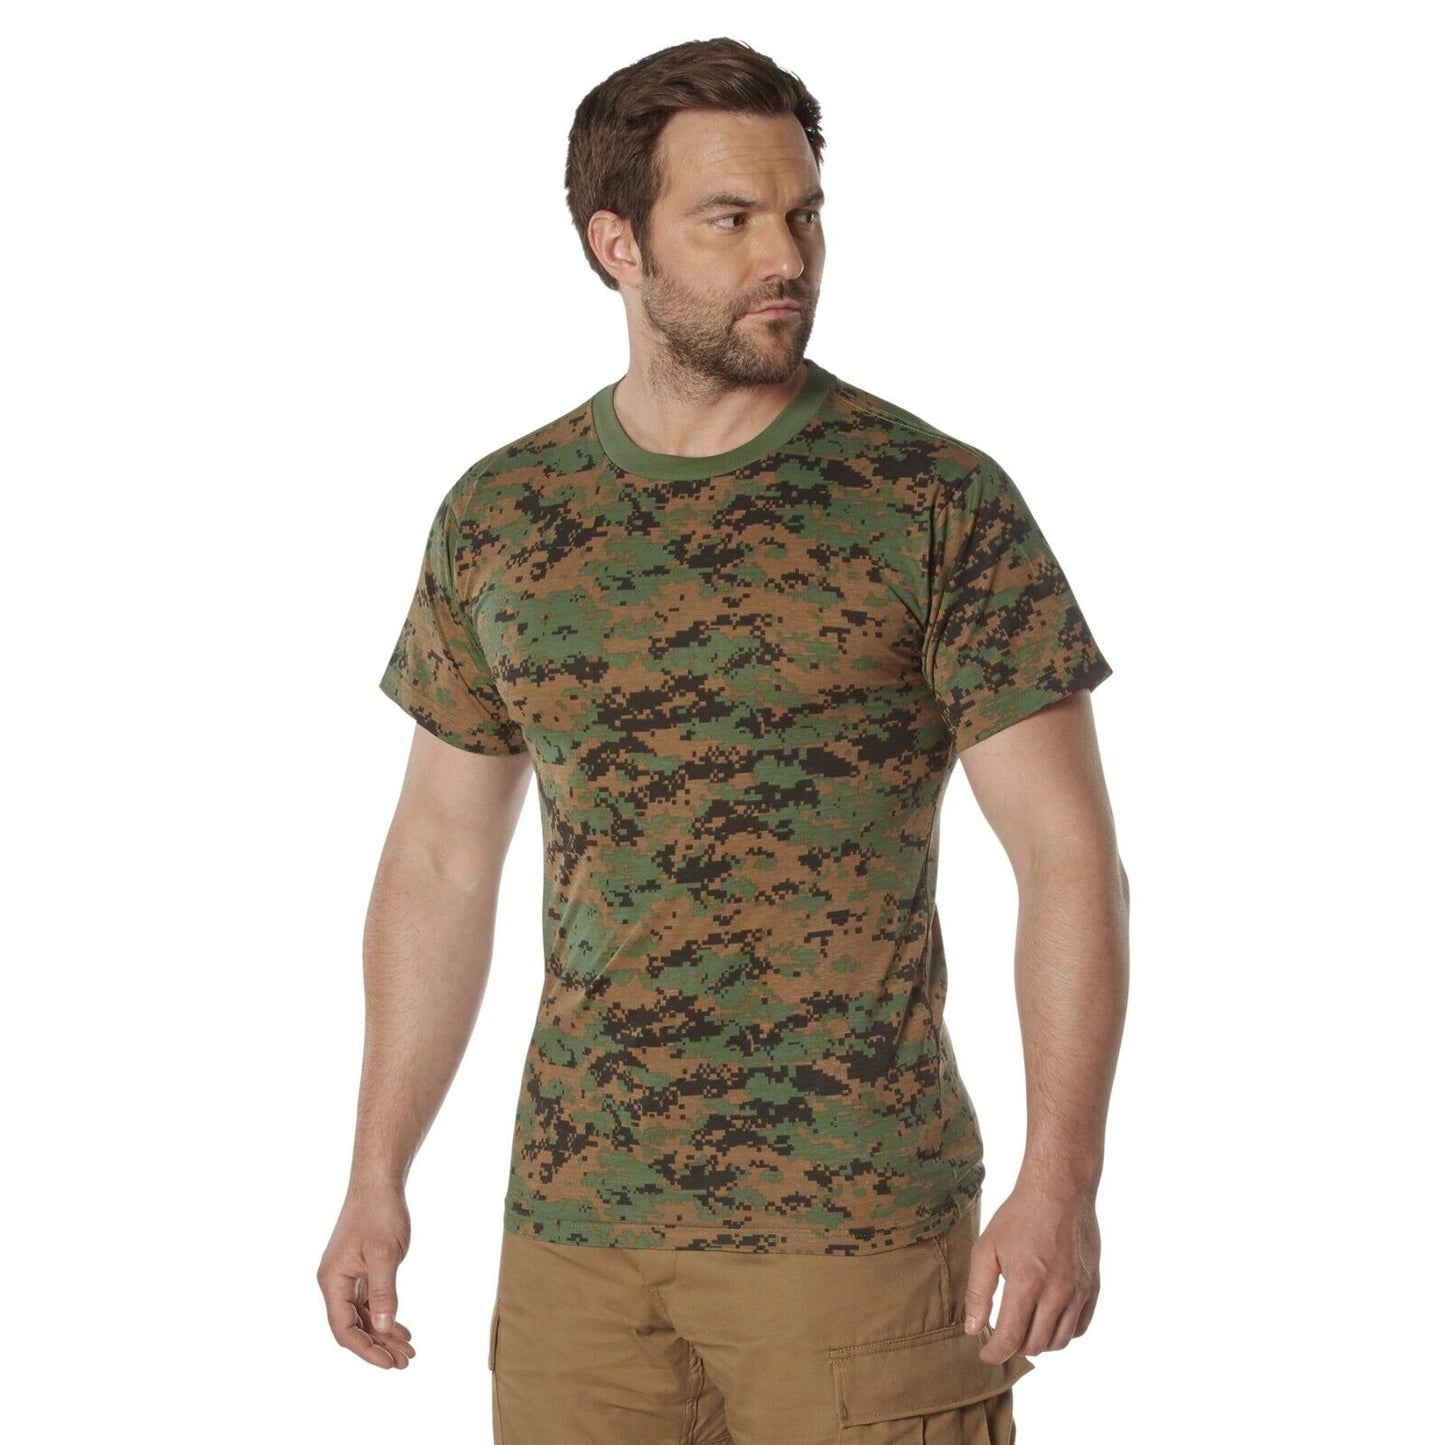 100% Cotton Camo T-Shirt Collection 5 Colors, Standard Fit